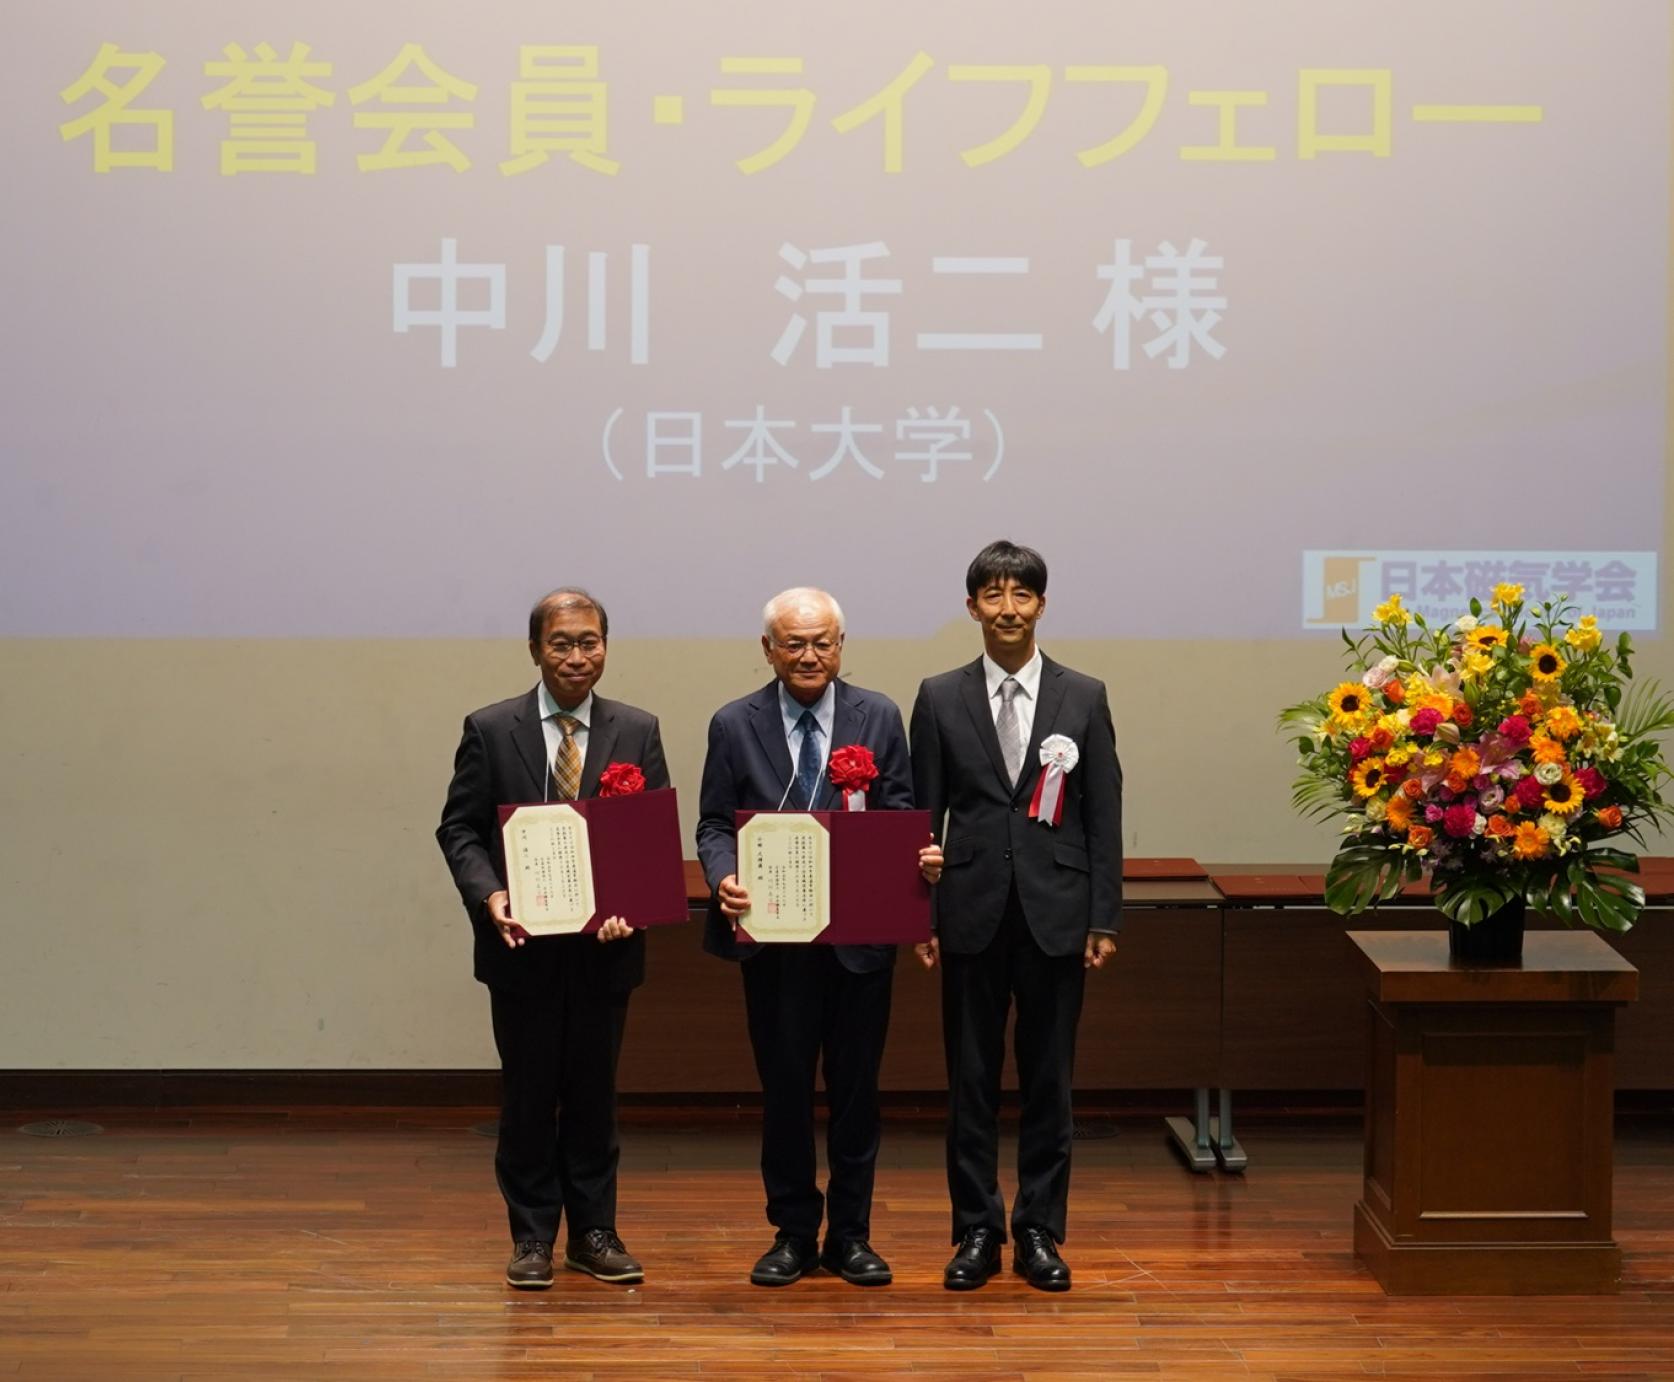 電子工学科中川活二特任教授が、日本磁気学会「名誉会員」そして「ライフフェロー」の称号を授与されました。